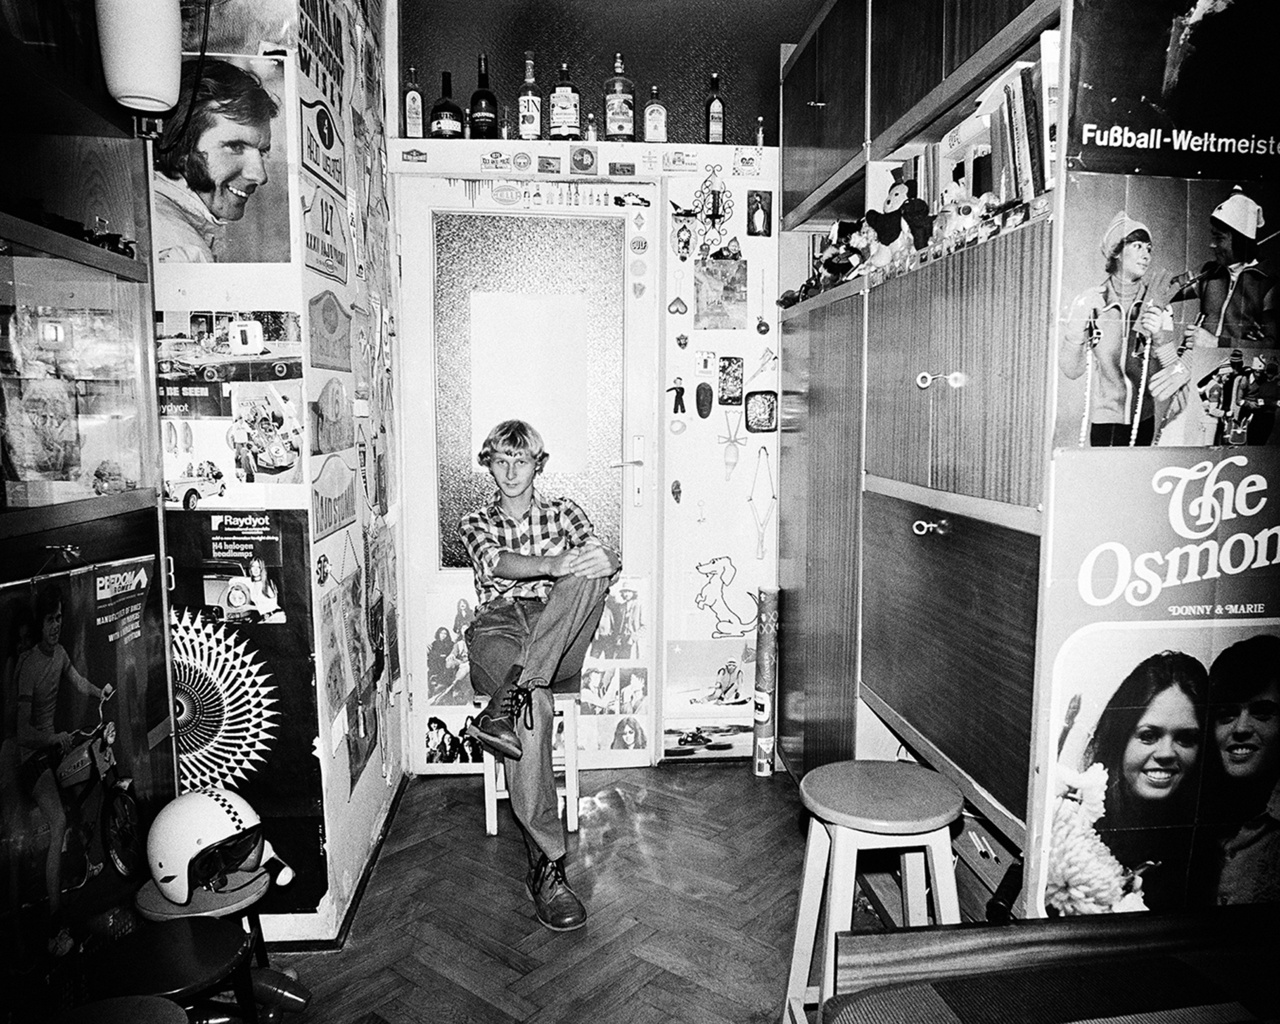 Jackie Stewart, The Osmonds, márkás nyugati italok és saját bukó a szekrénysor előtt. Rydet időnként belenyúlt a környezetbe: a felvétel előtt némileg átrendezte a szobában lévő tárgyakat, kisebb kompozíciót hozott létre az asztalon lévő dolgokból, egy-egy fotót a falon áthelyezett.